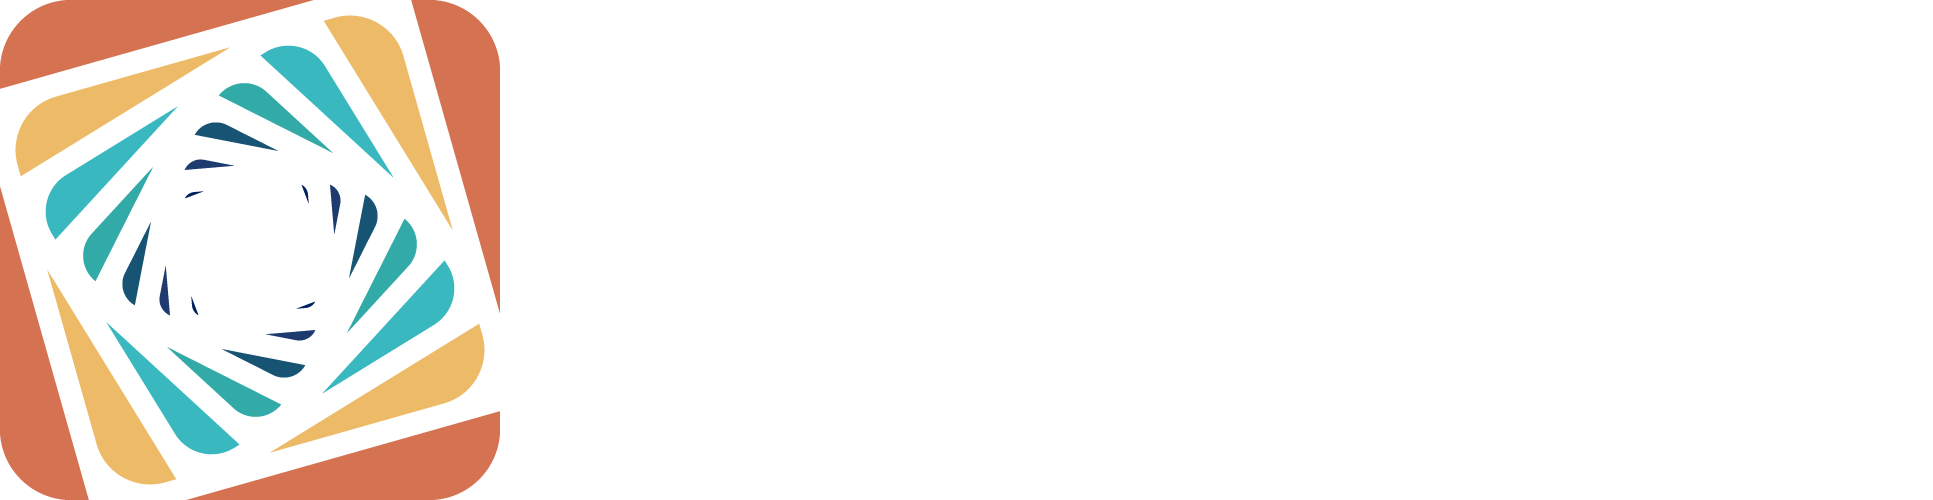 Kaleido full logo